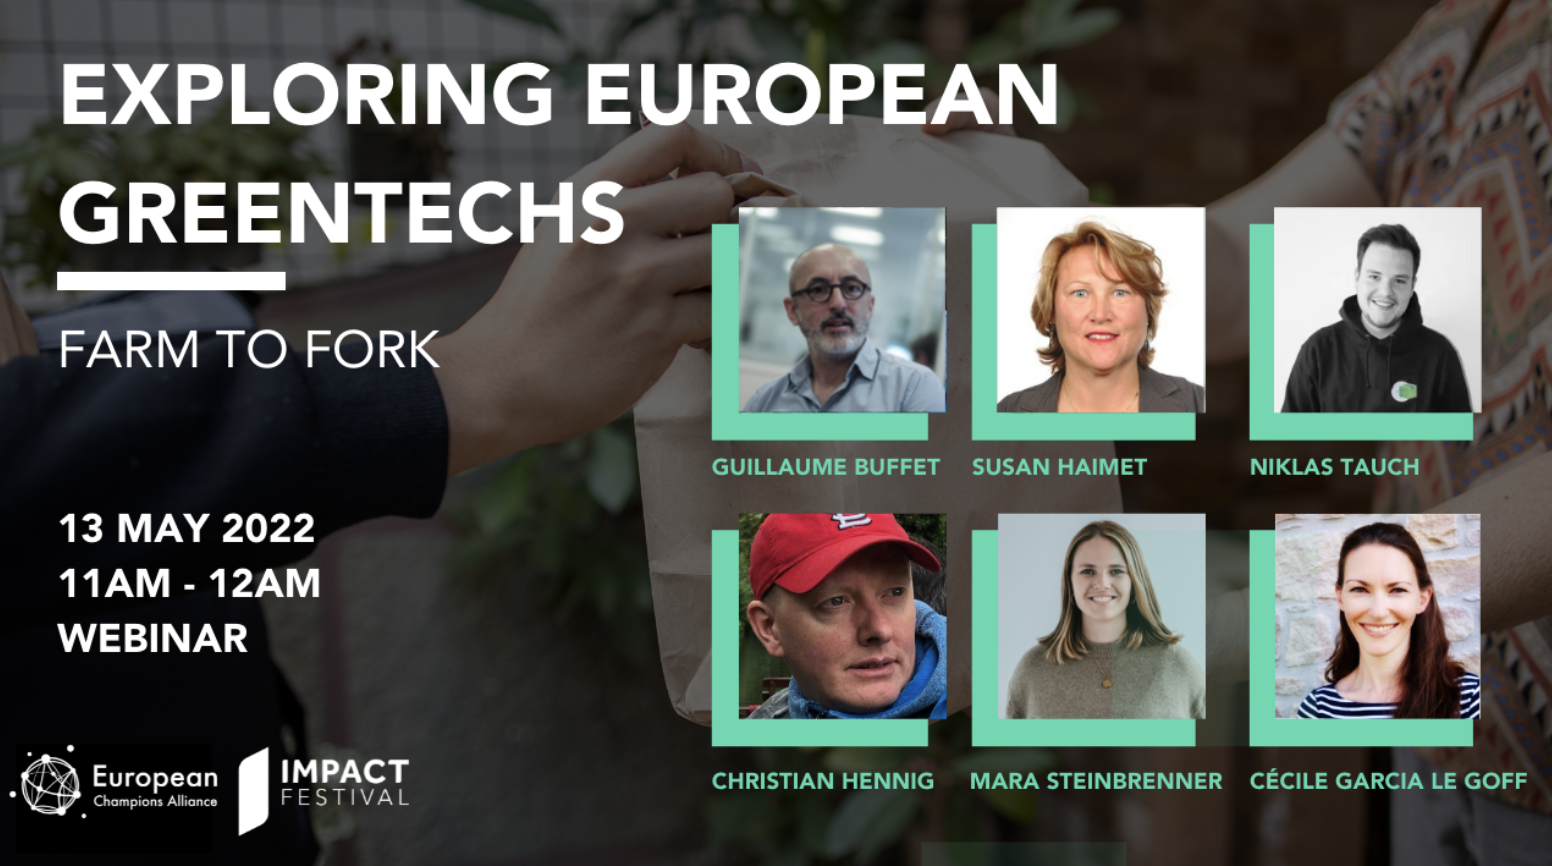 FARM TO FORK webinar - Exploring European Greentechs